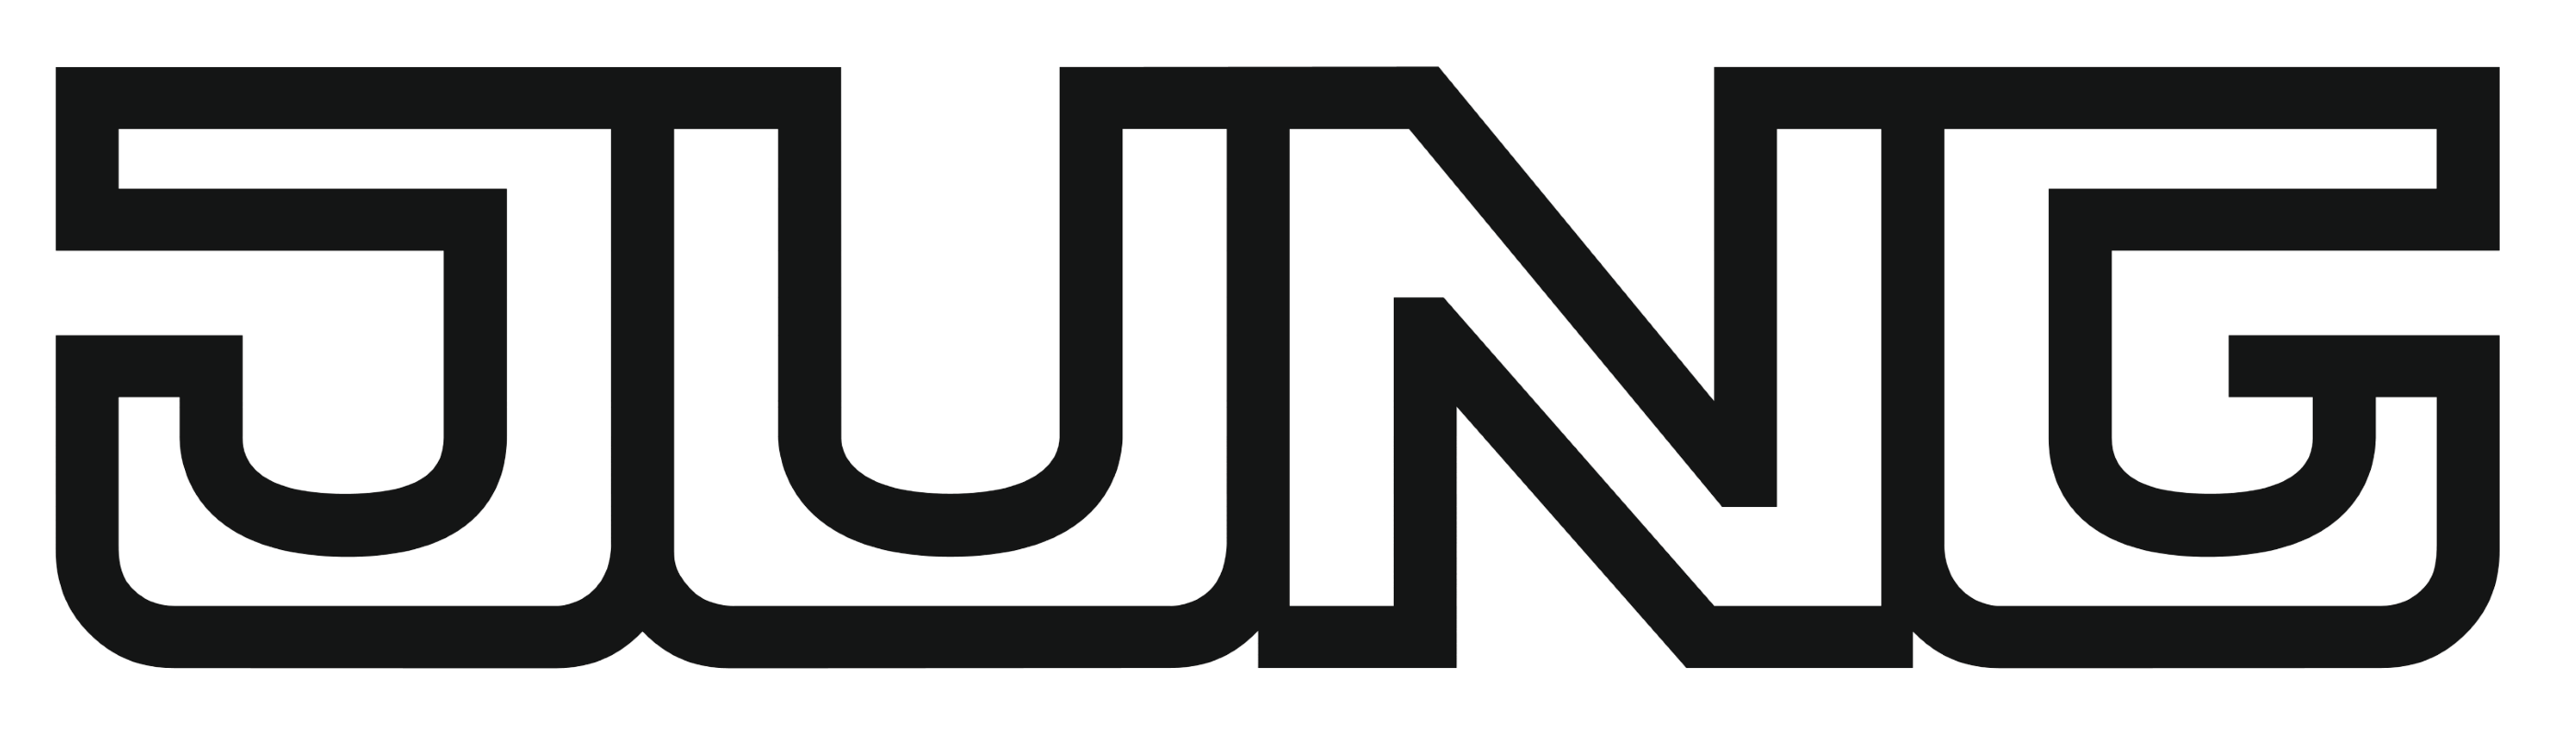 Jung logo, logotype